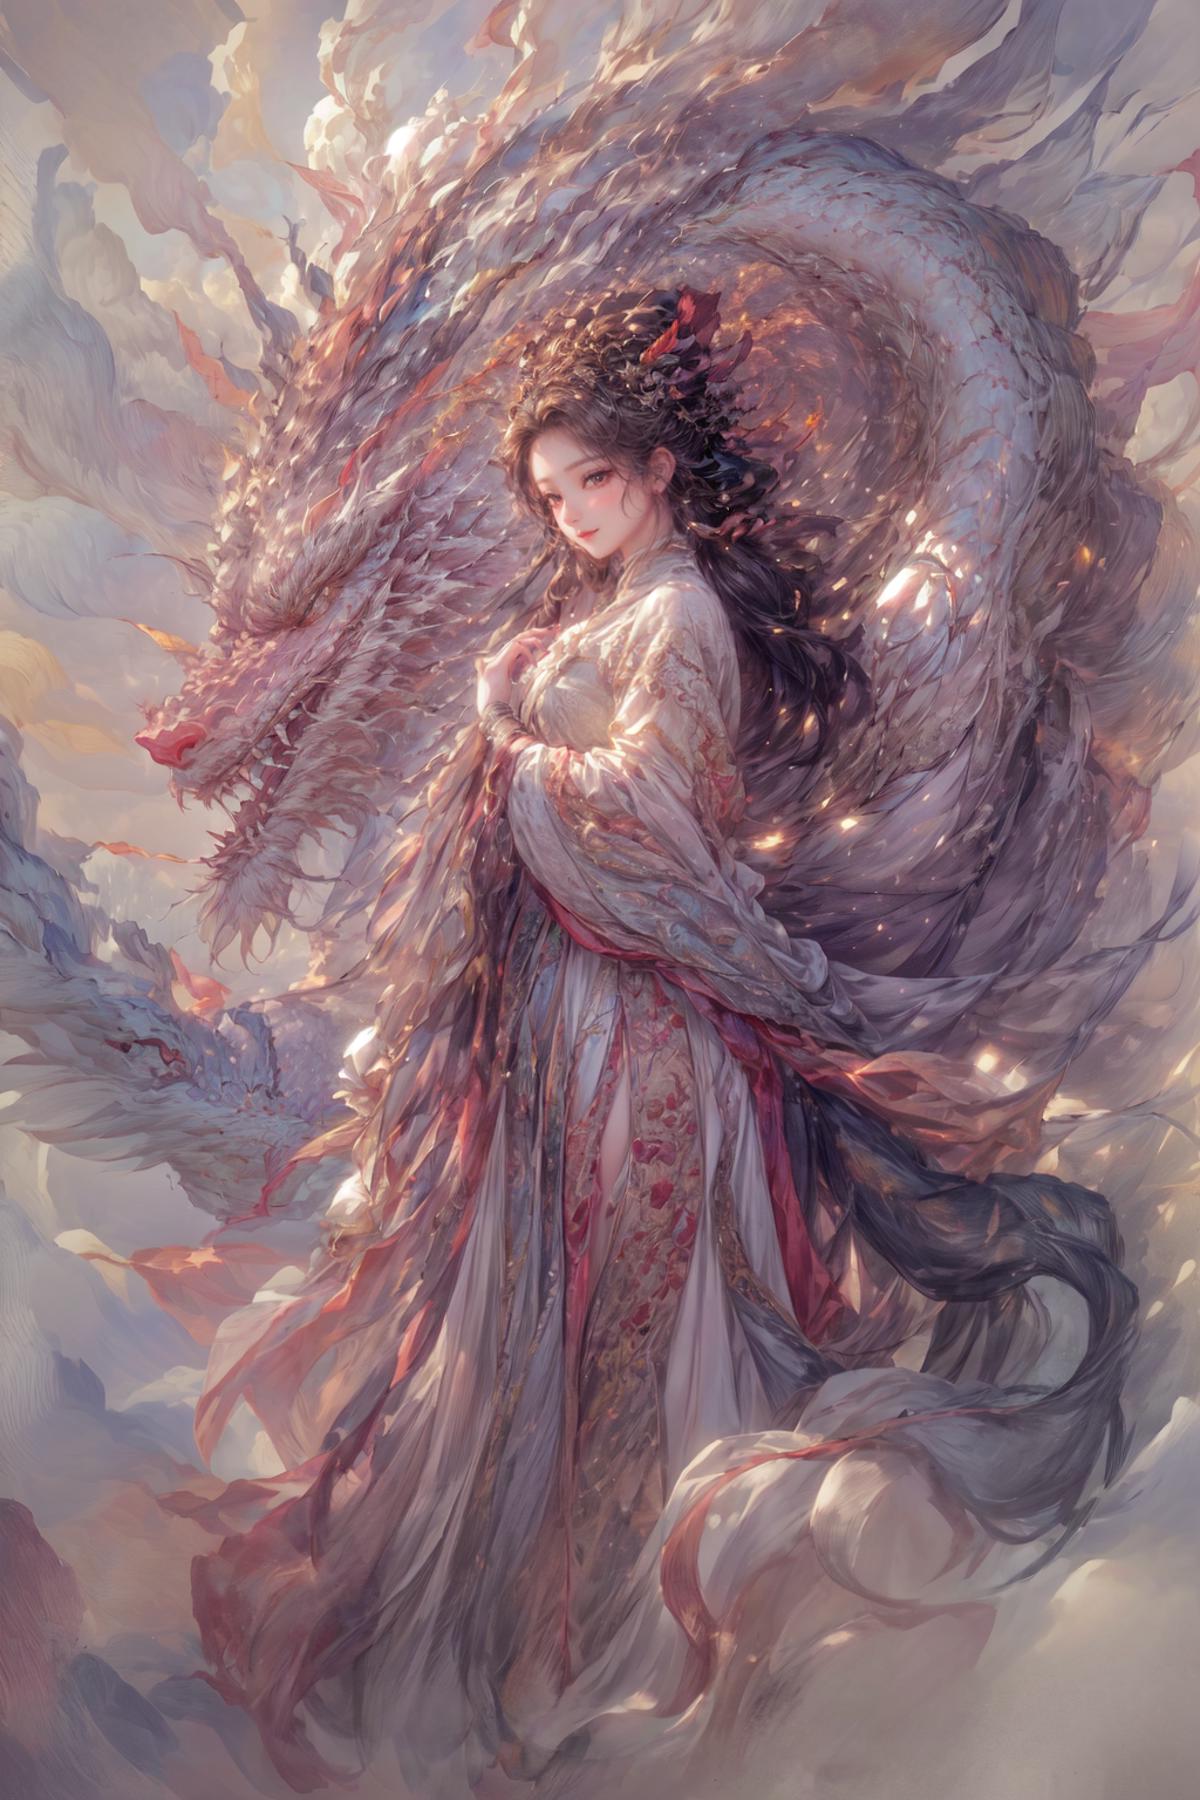 龙和少女Dragon and Girl image by yoyochen2023